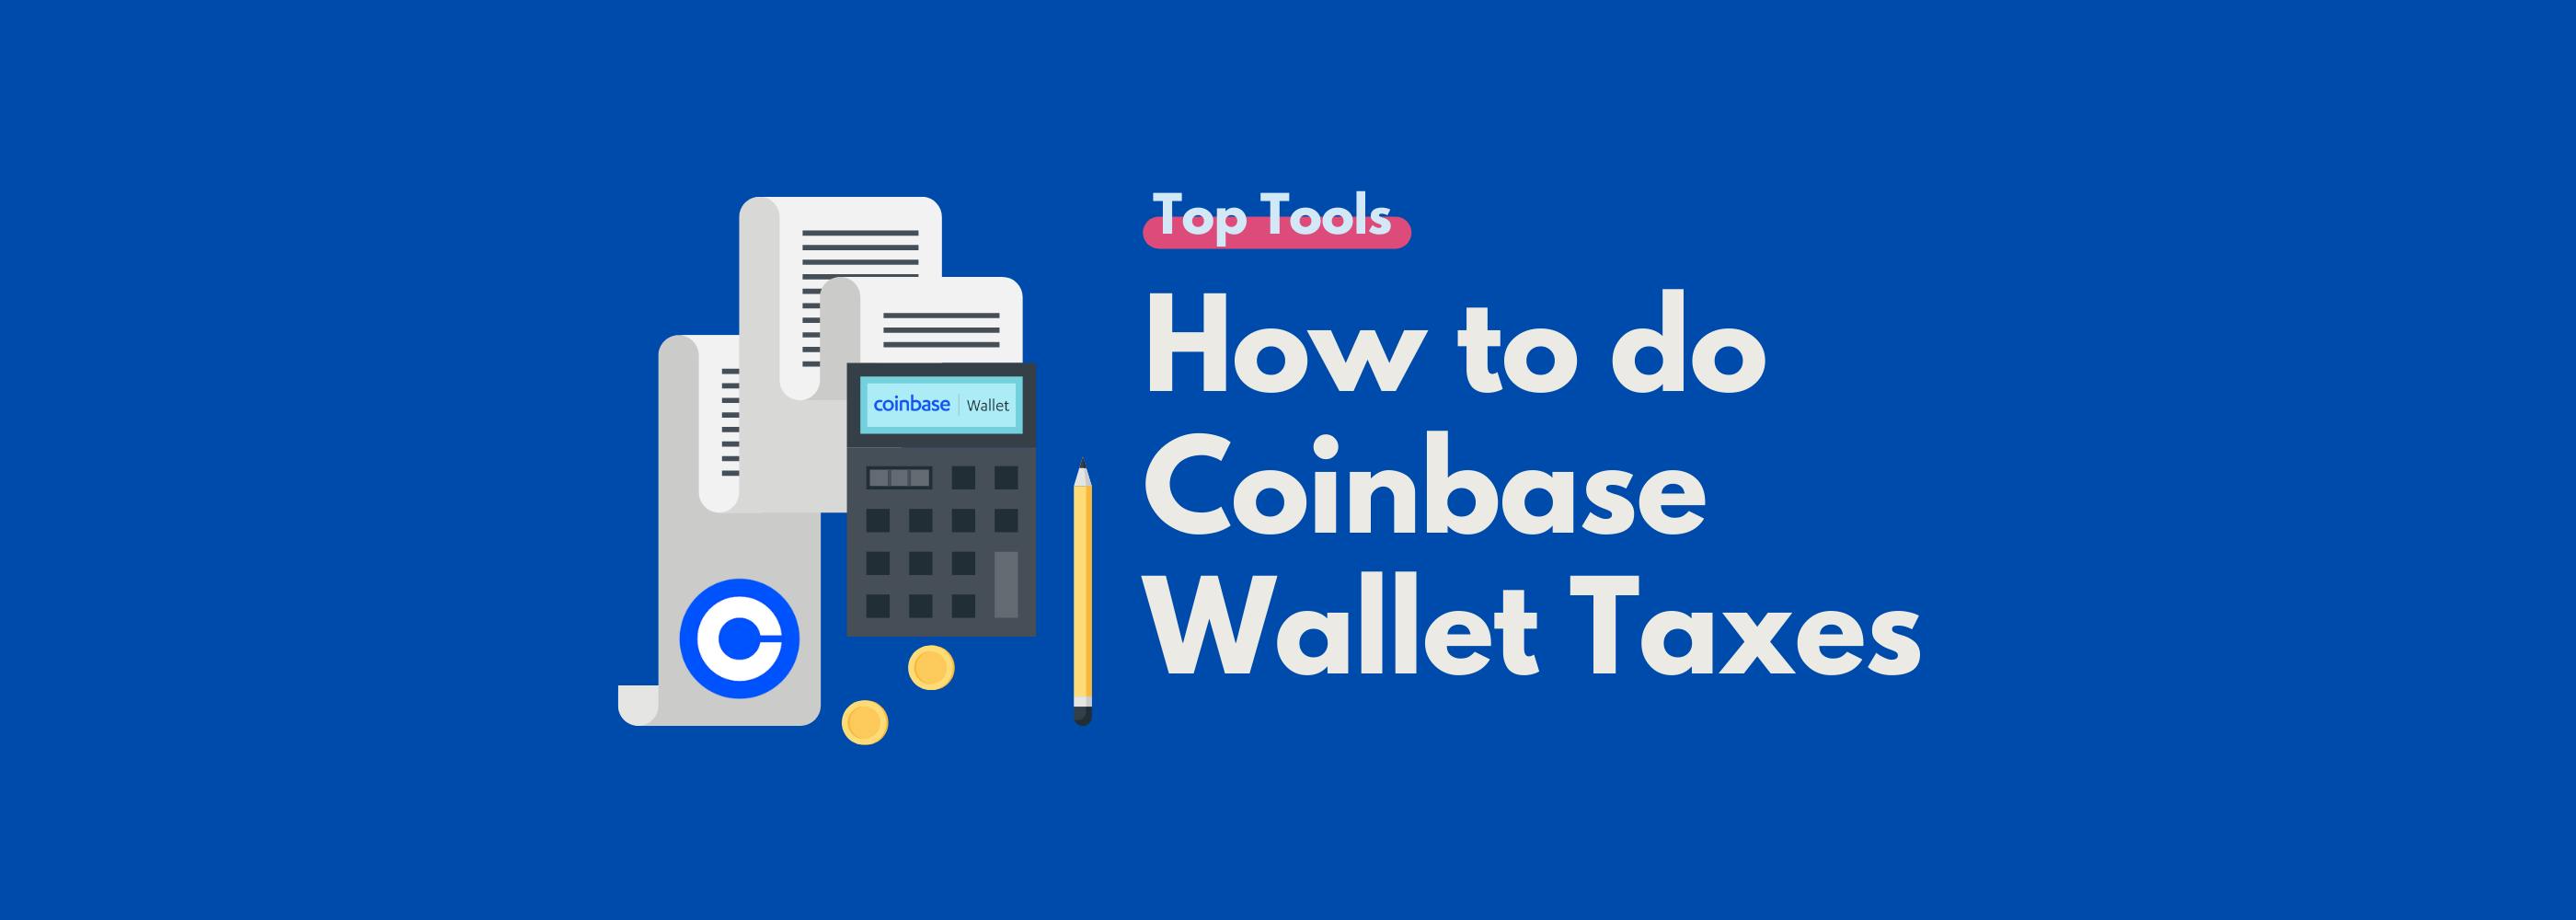 Coinbase Wallet Taxes